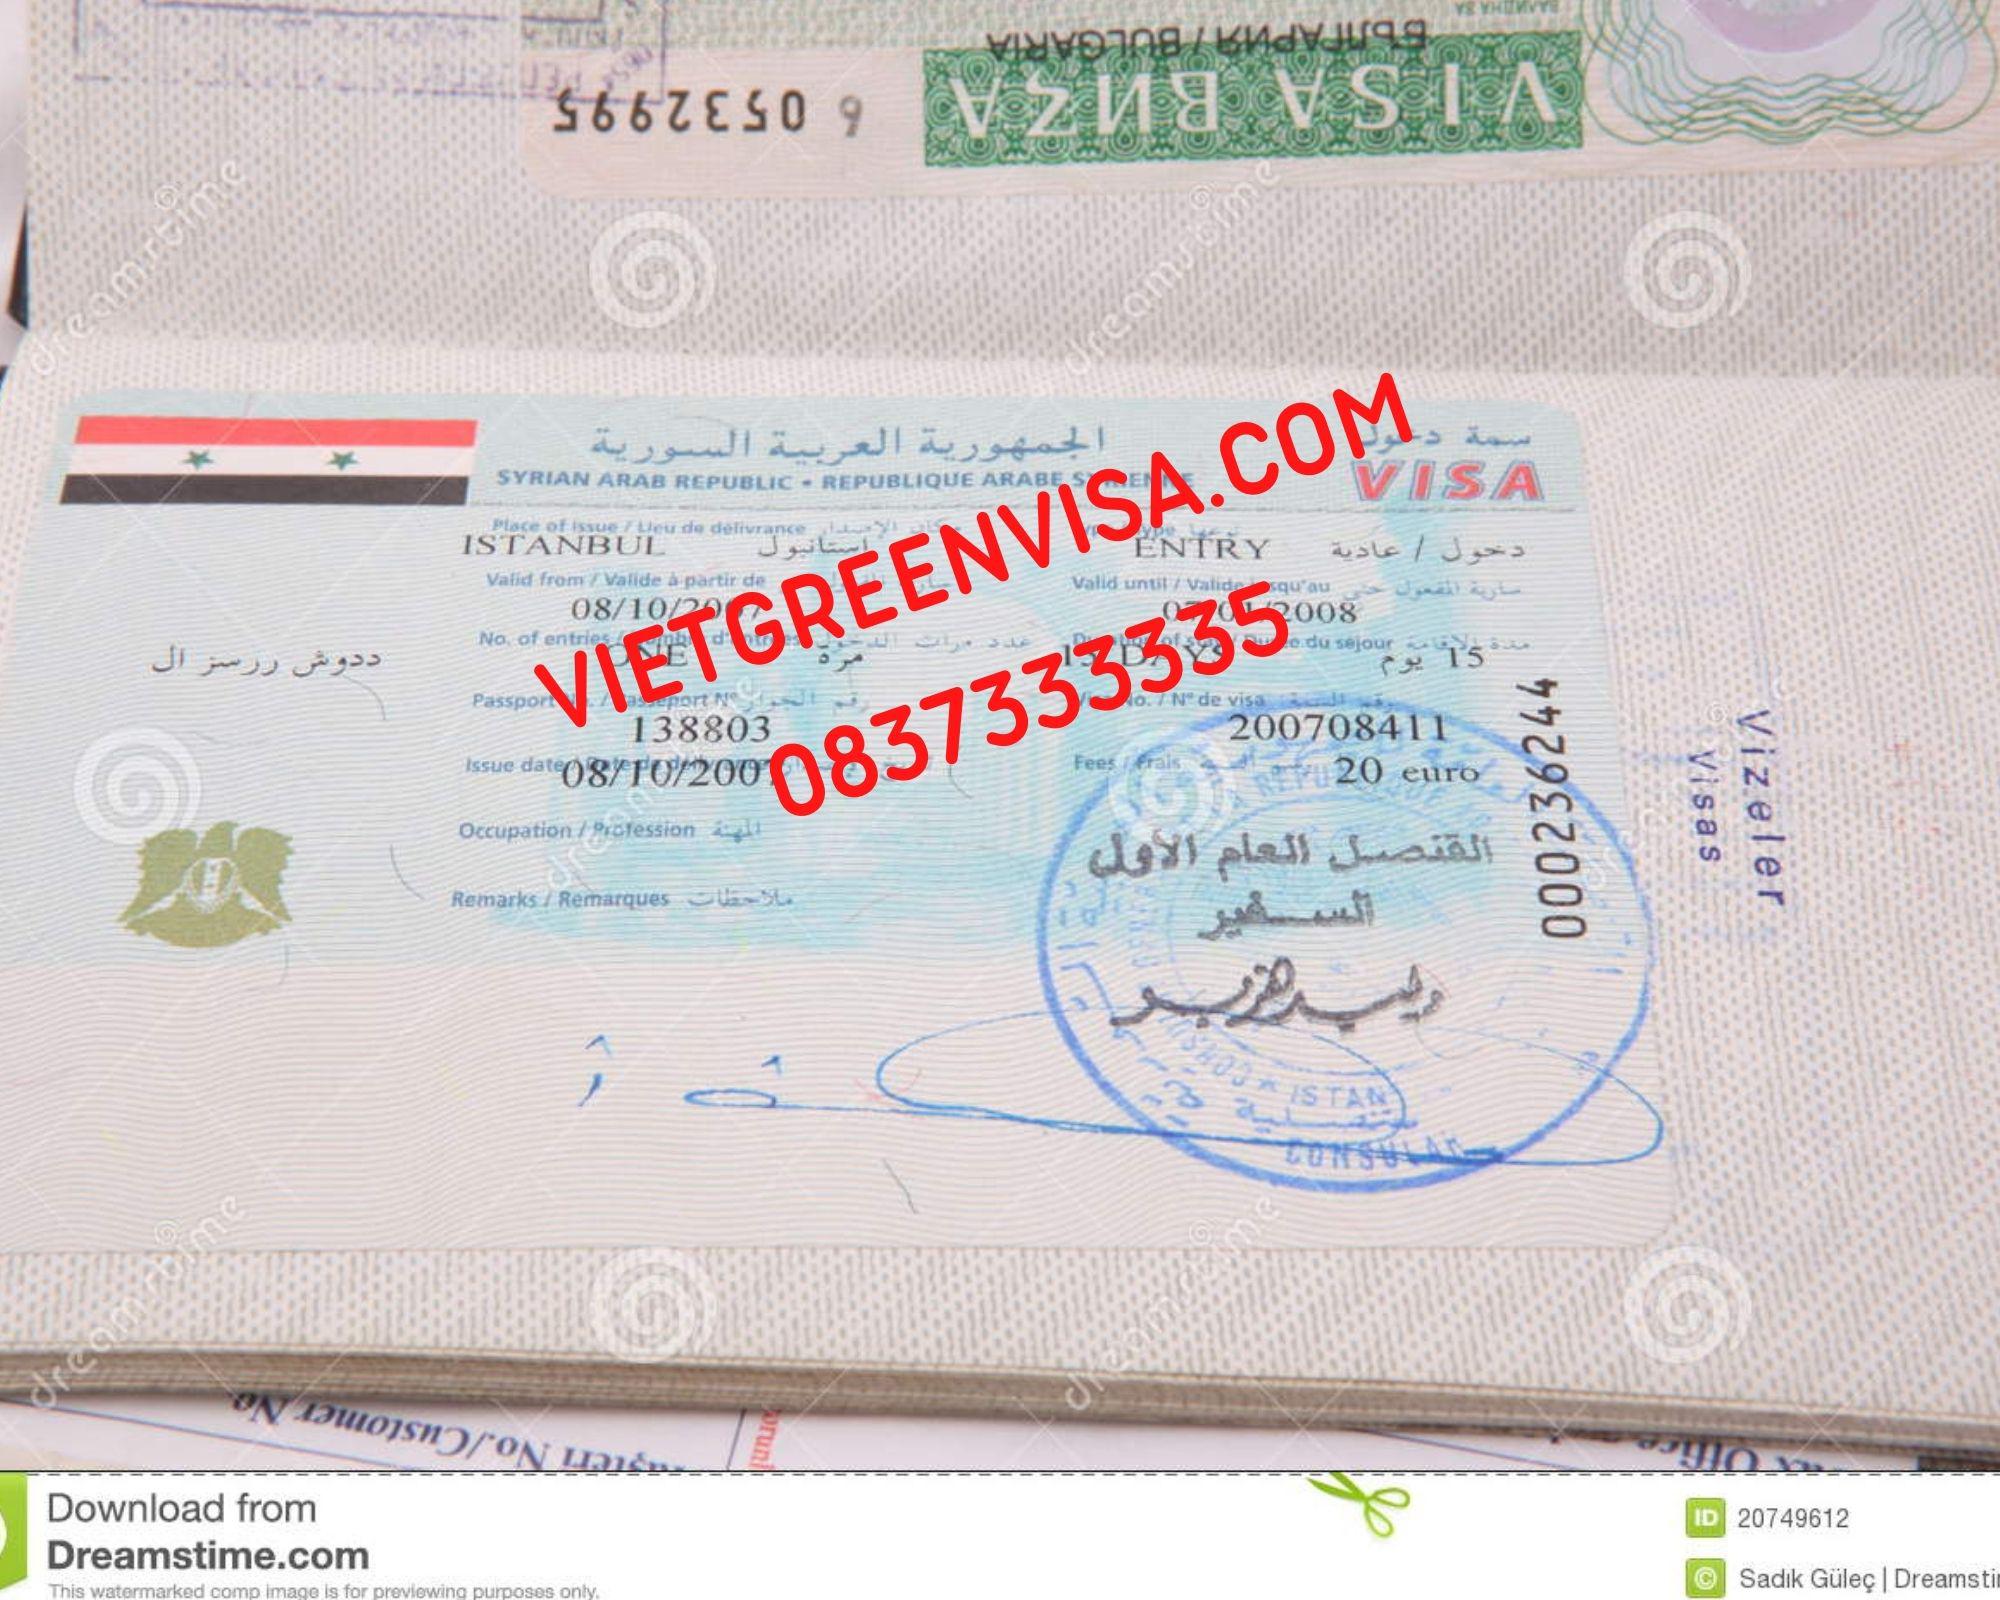 Dịch vụ làm visa du học Syria, Visa Dubai đi học tiếng, học đại học